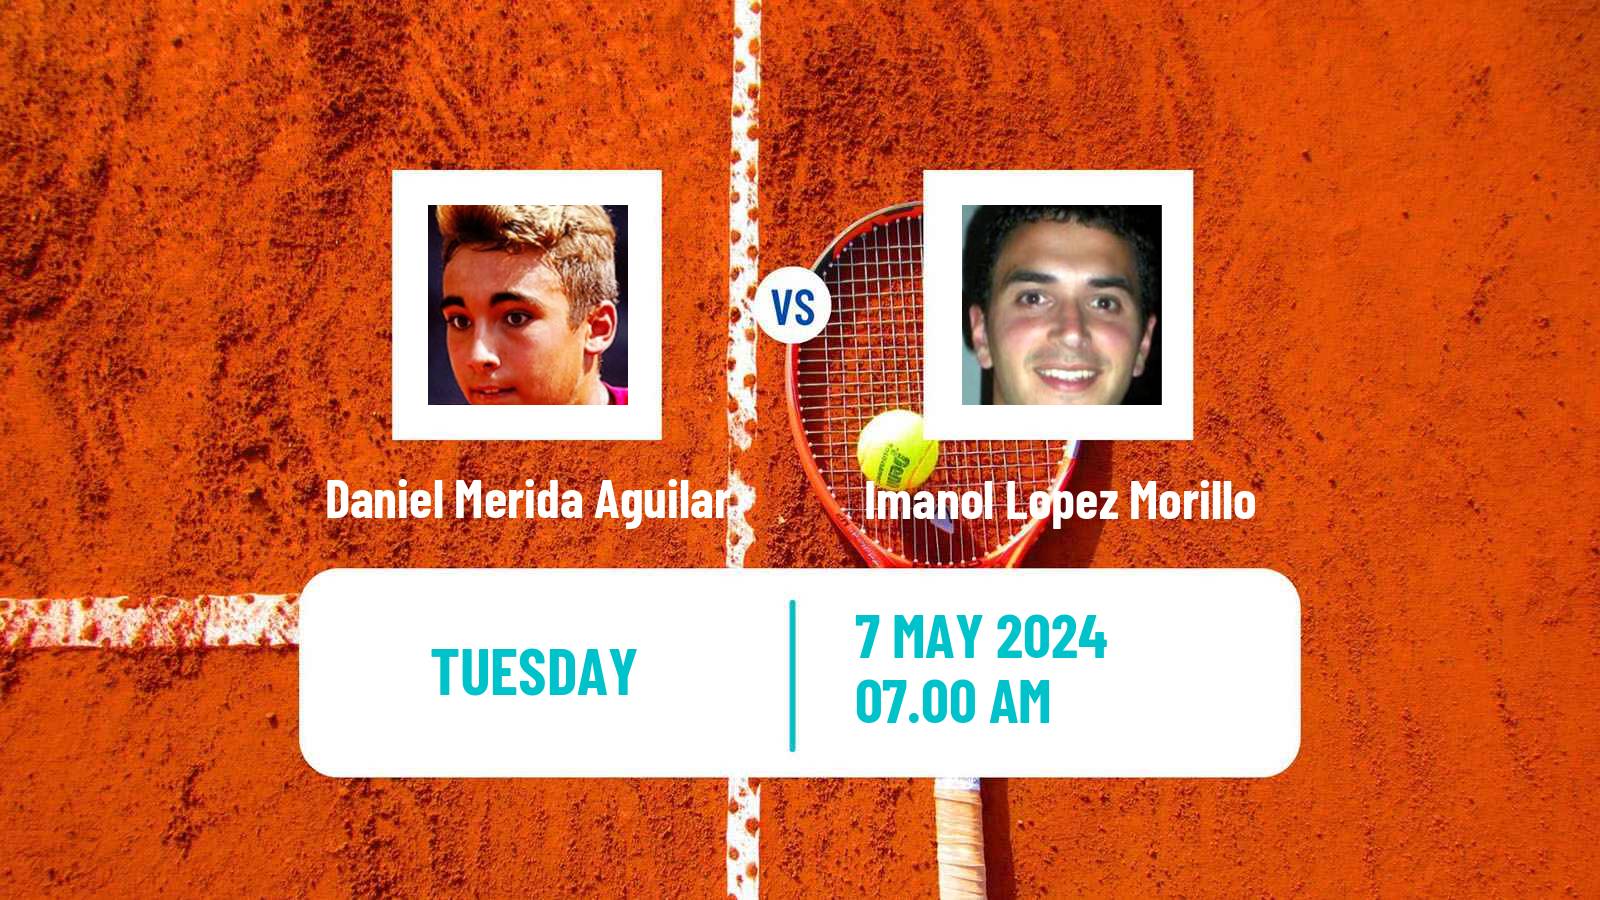 Tennis ITF M25 Valldoreix Men Daniel Merida Aguilar - Imanol Lopez Morillo